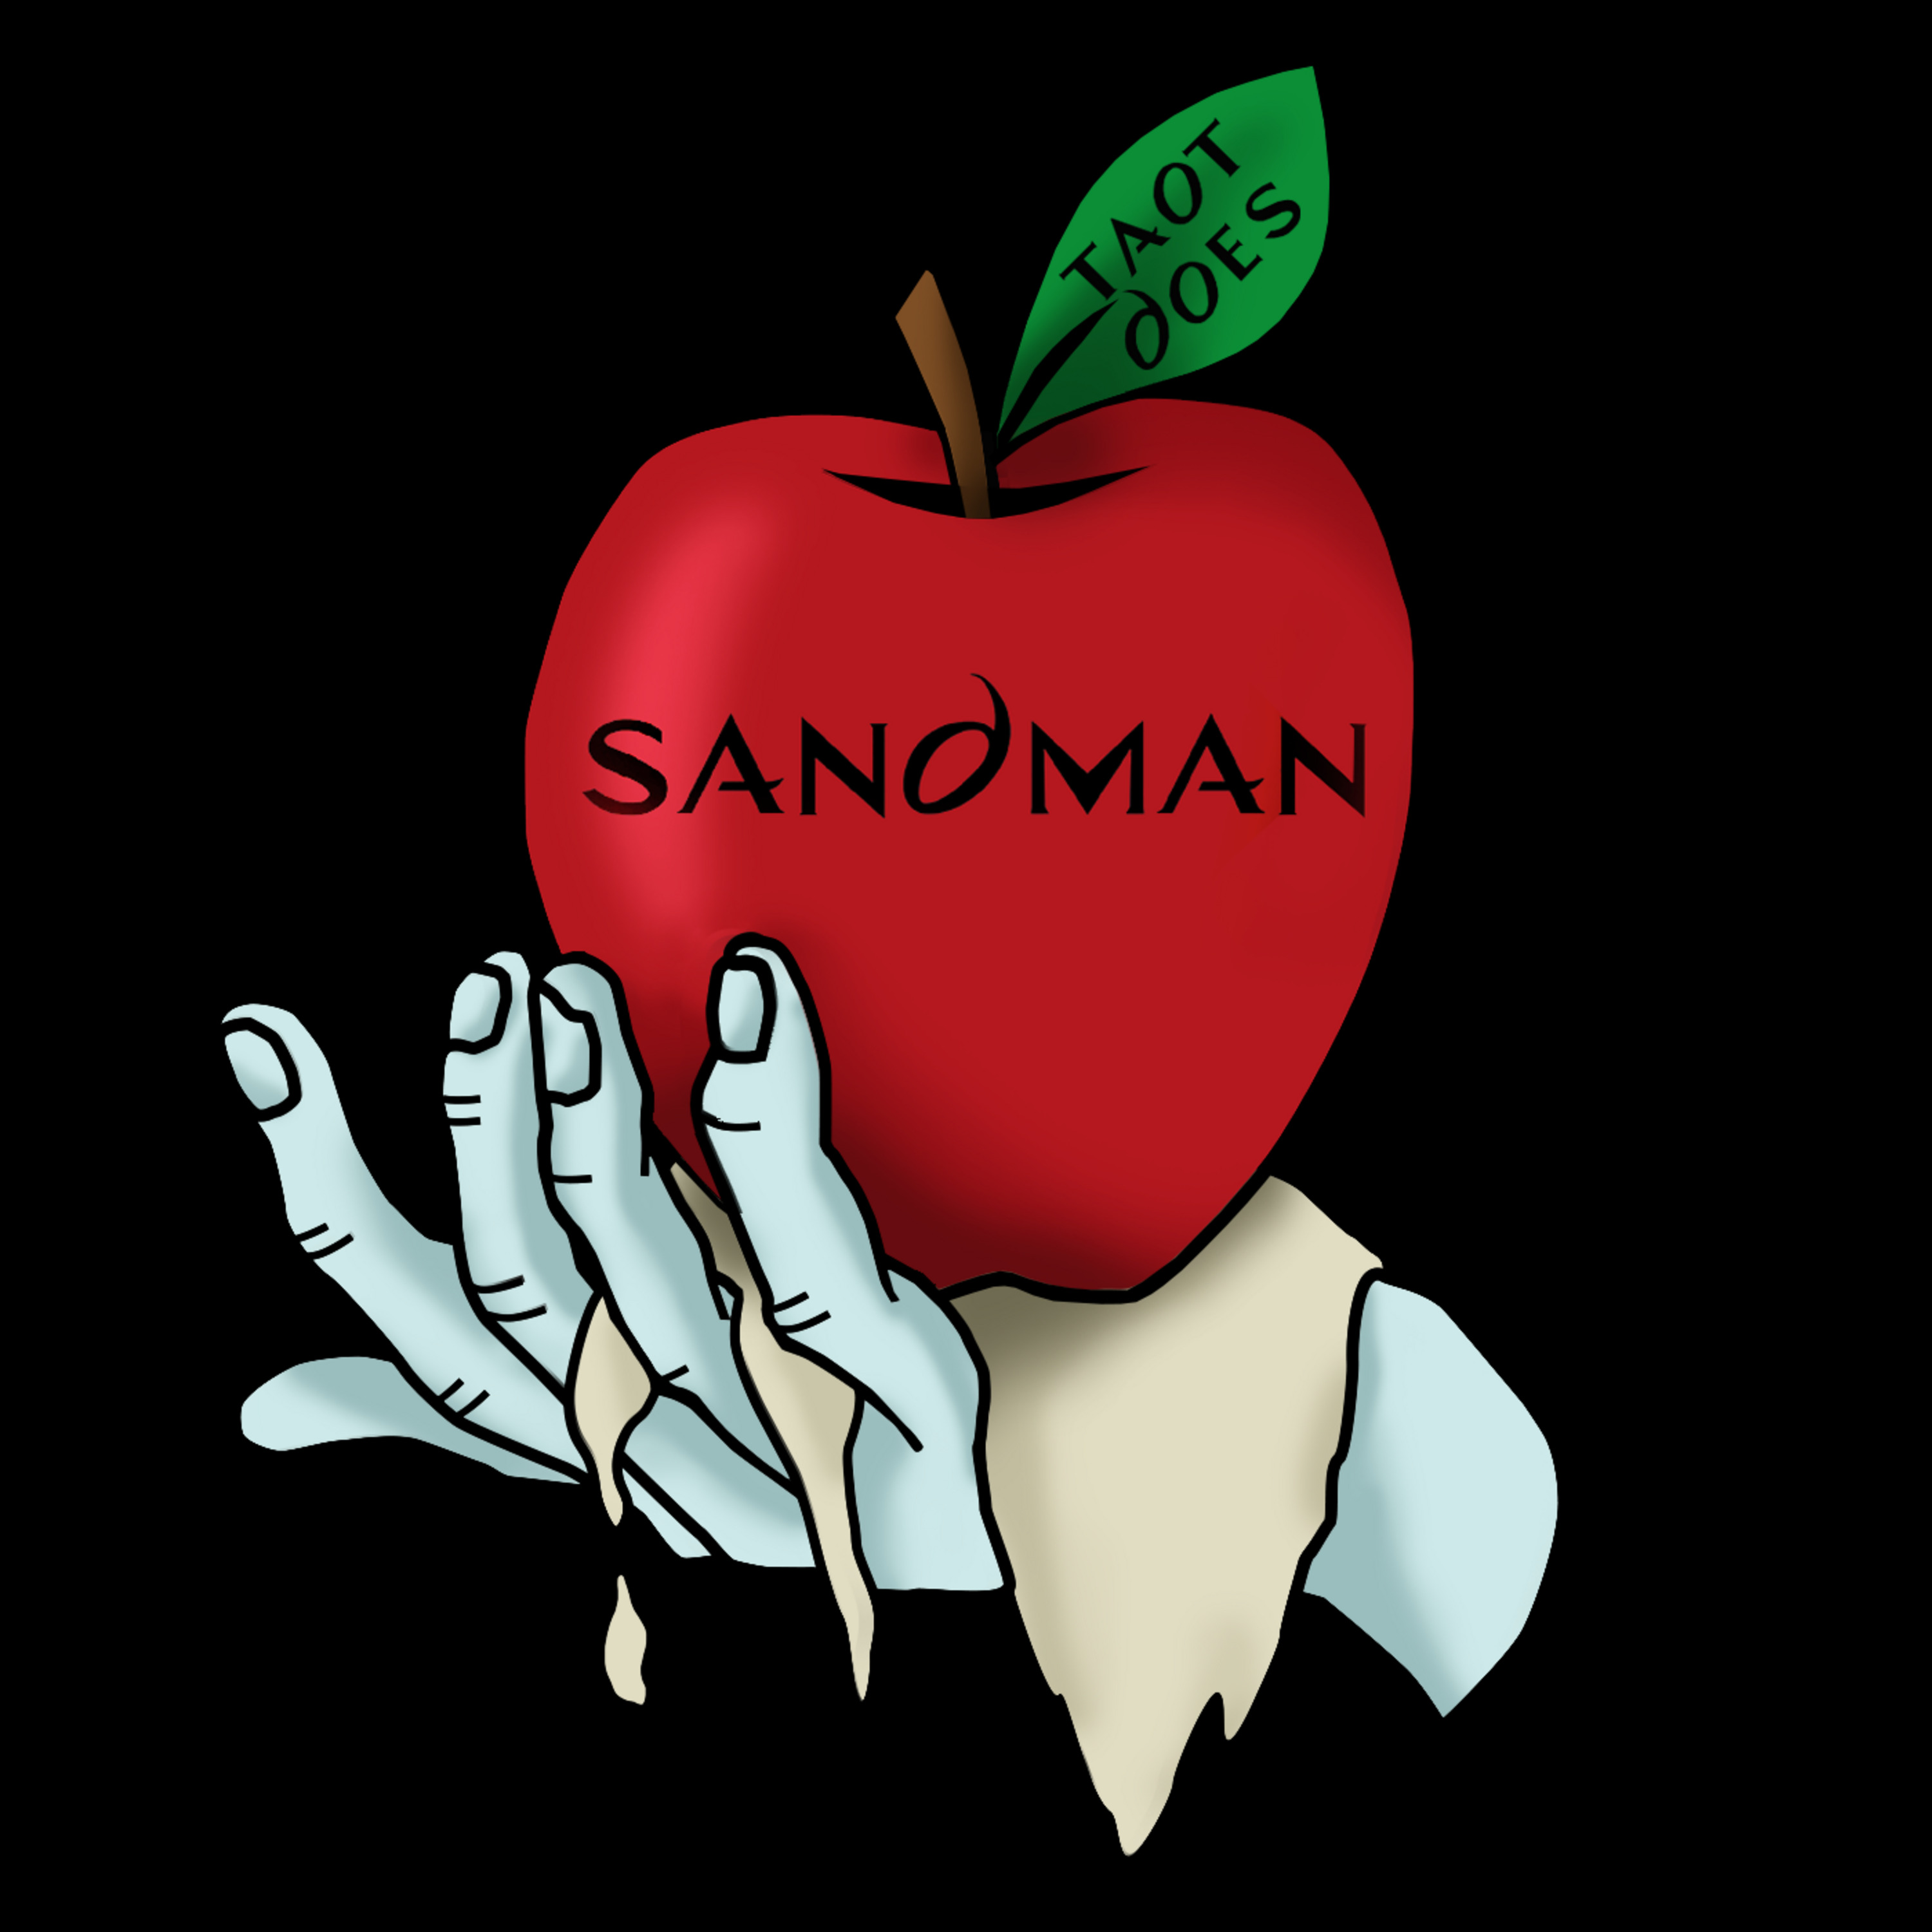 Episode 134: TAOT The Sandman S1E01